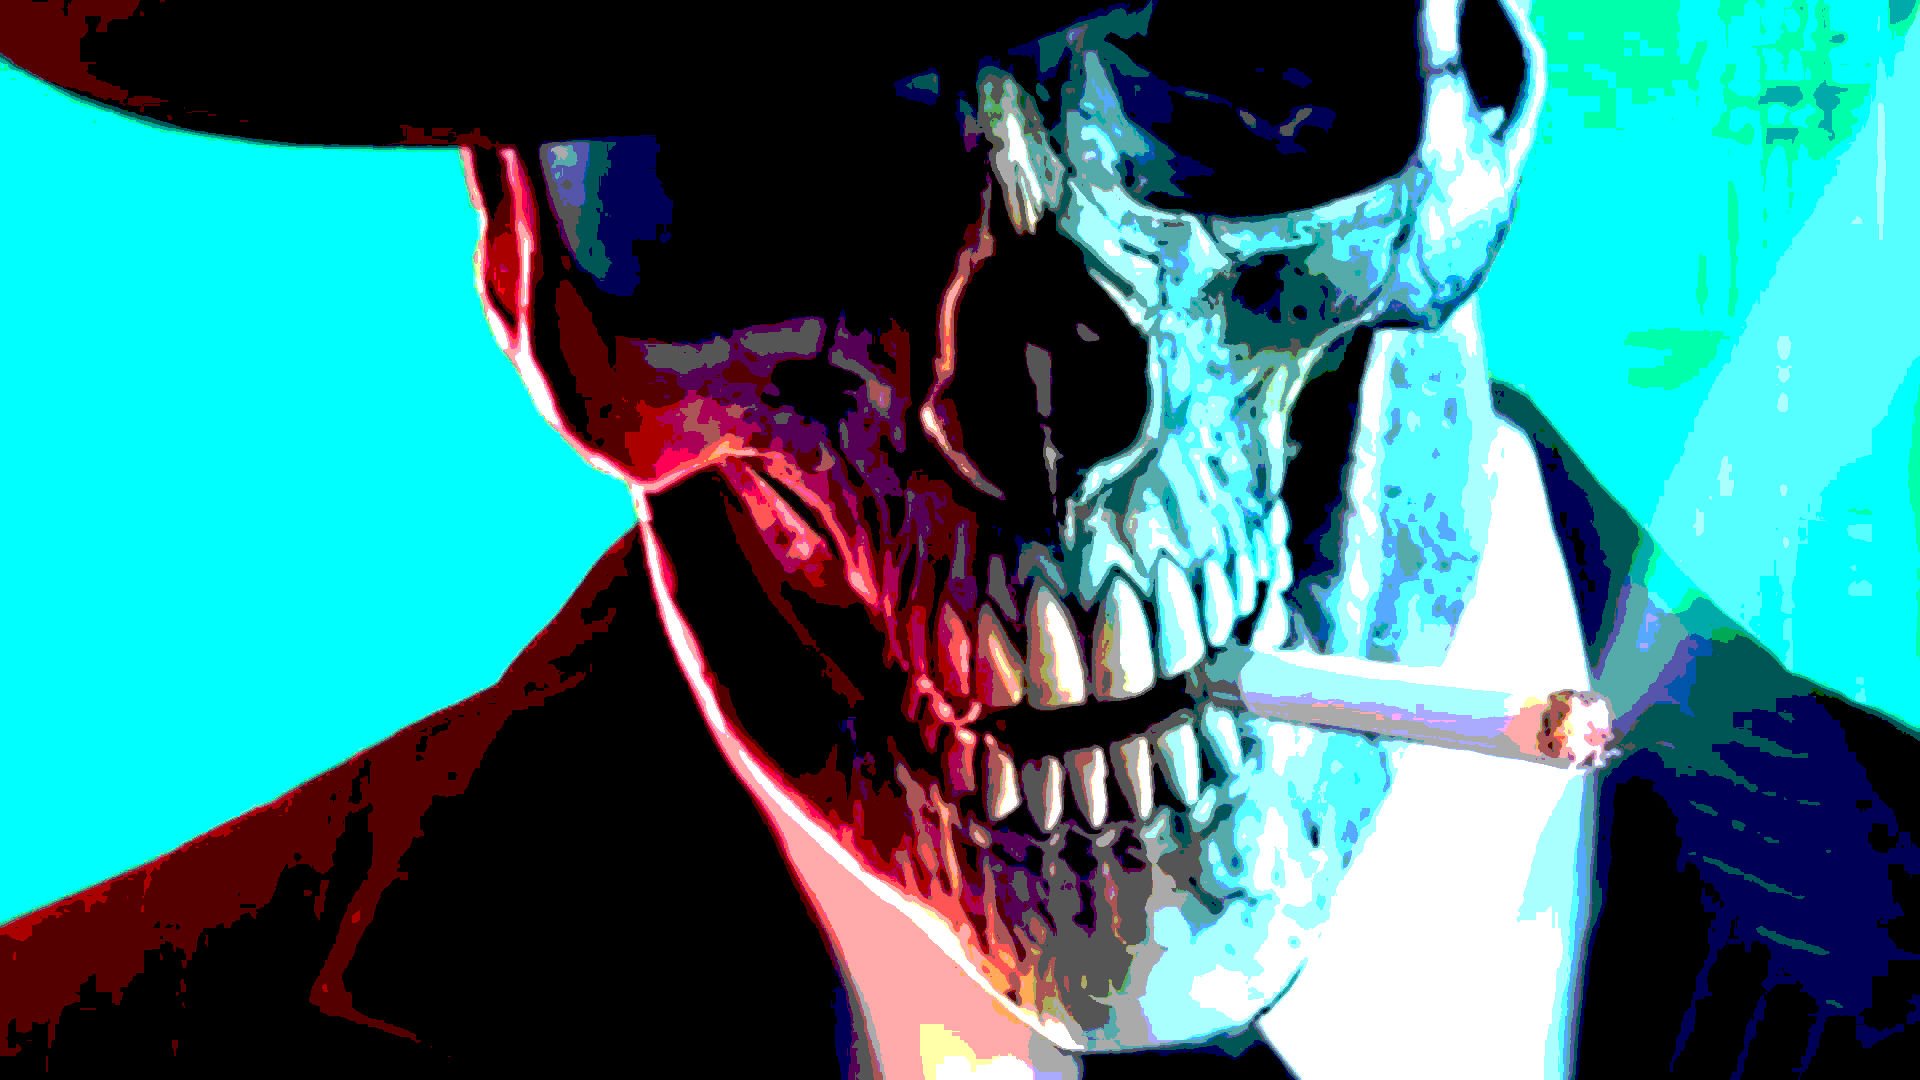 HD desktop wallpaper: Music, Skull, Smoking, Adrenaline Mob download free picture